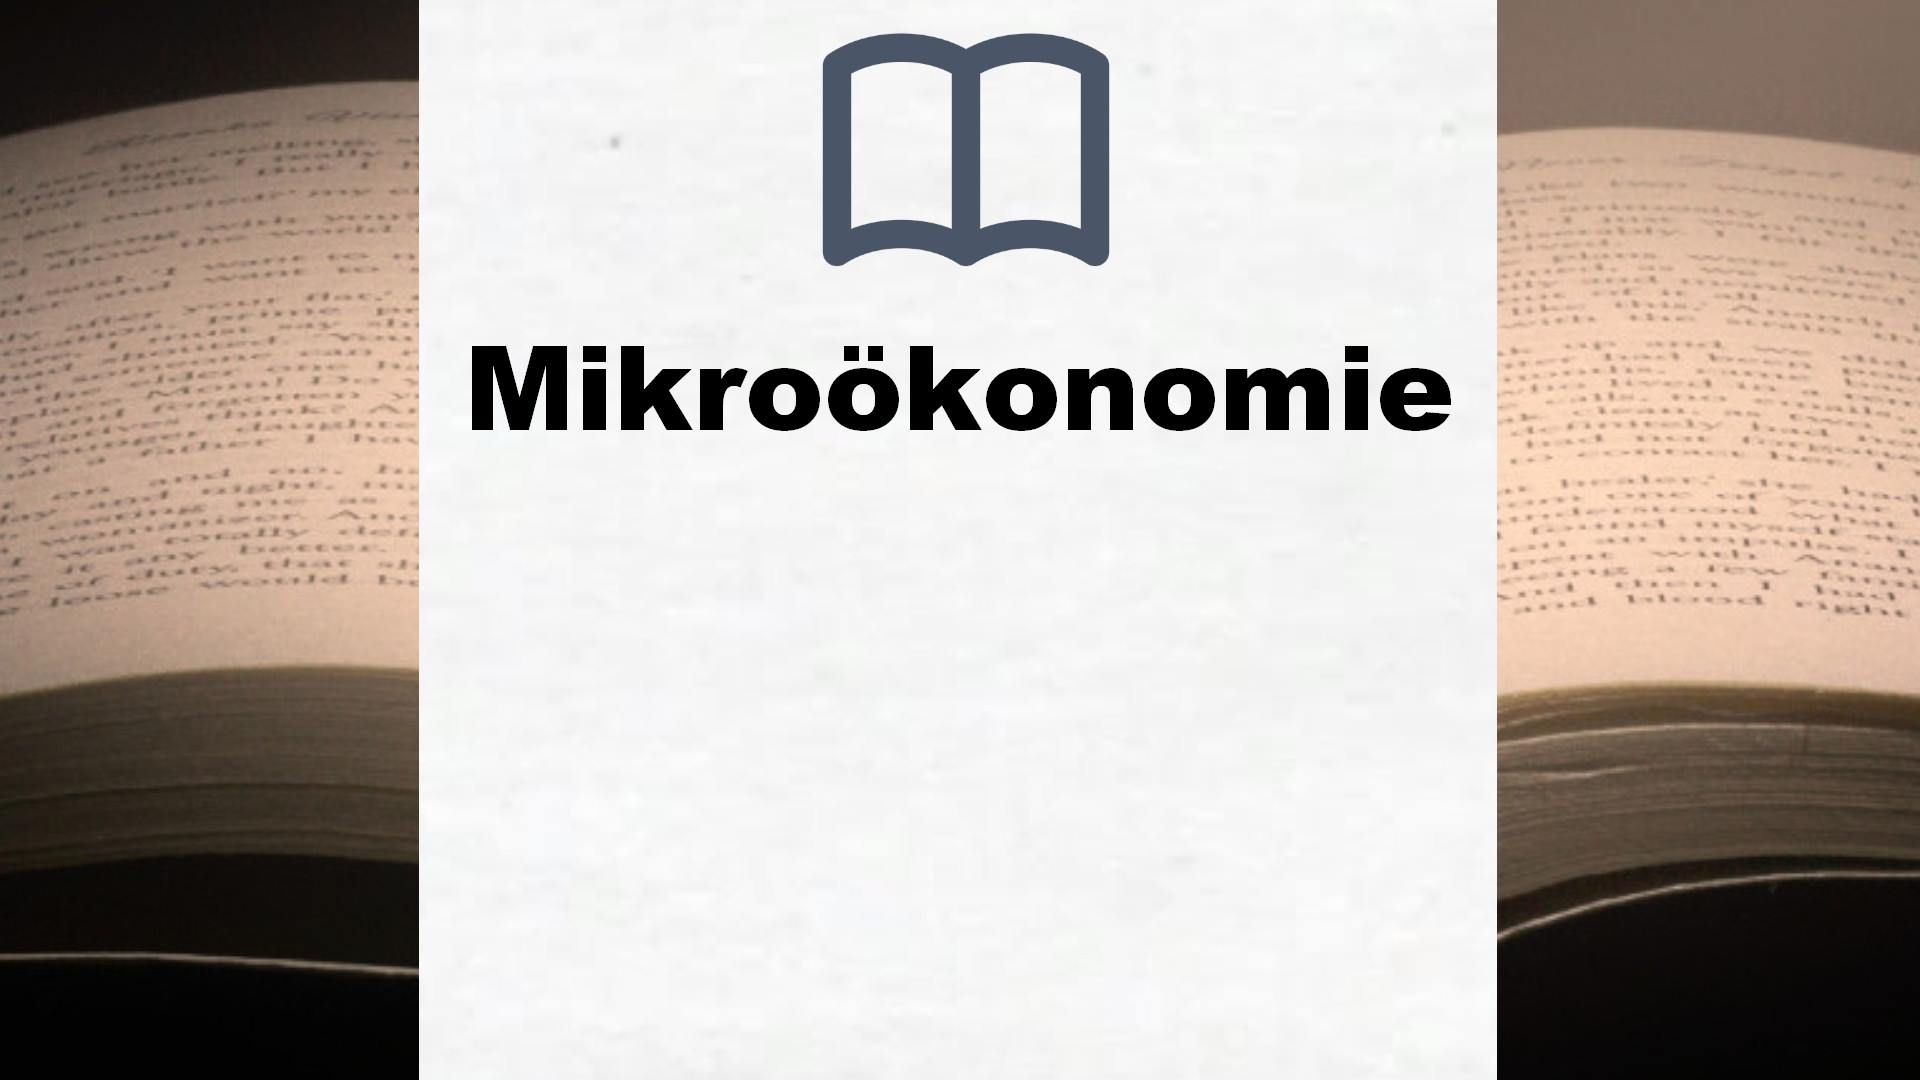 Bücher über Mikroökonomie